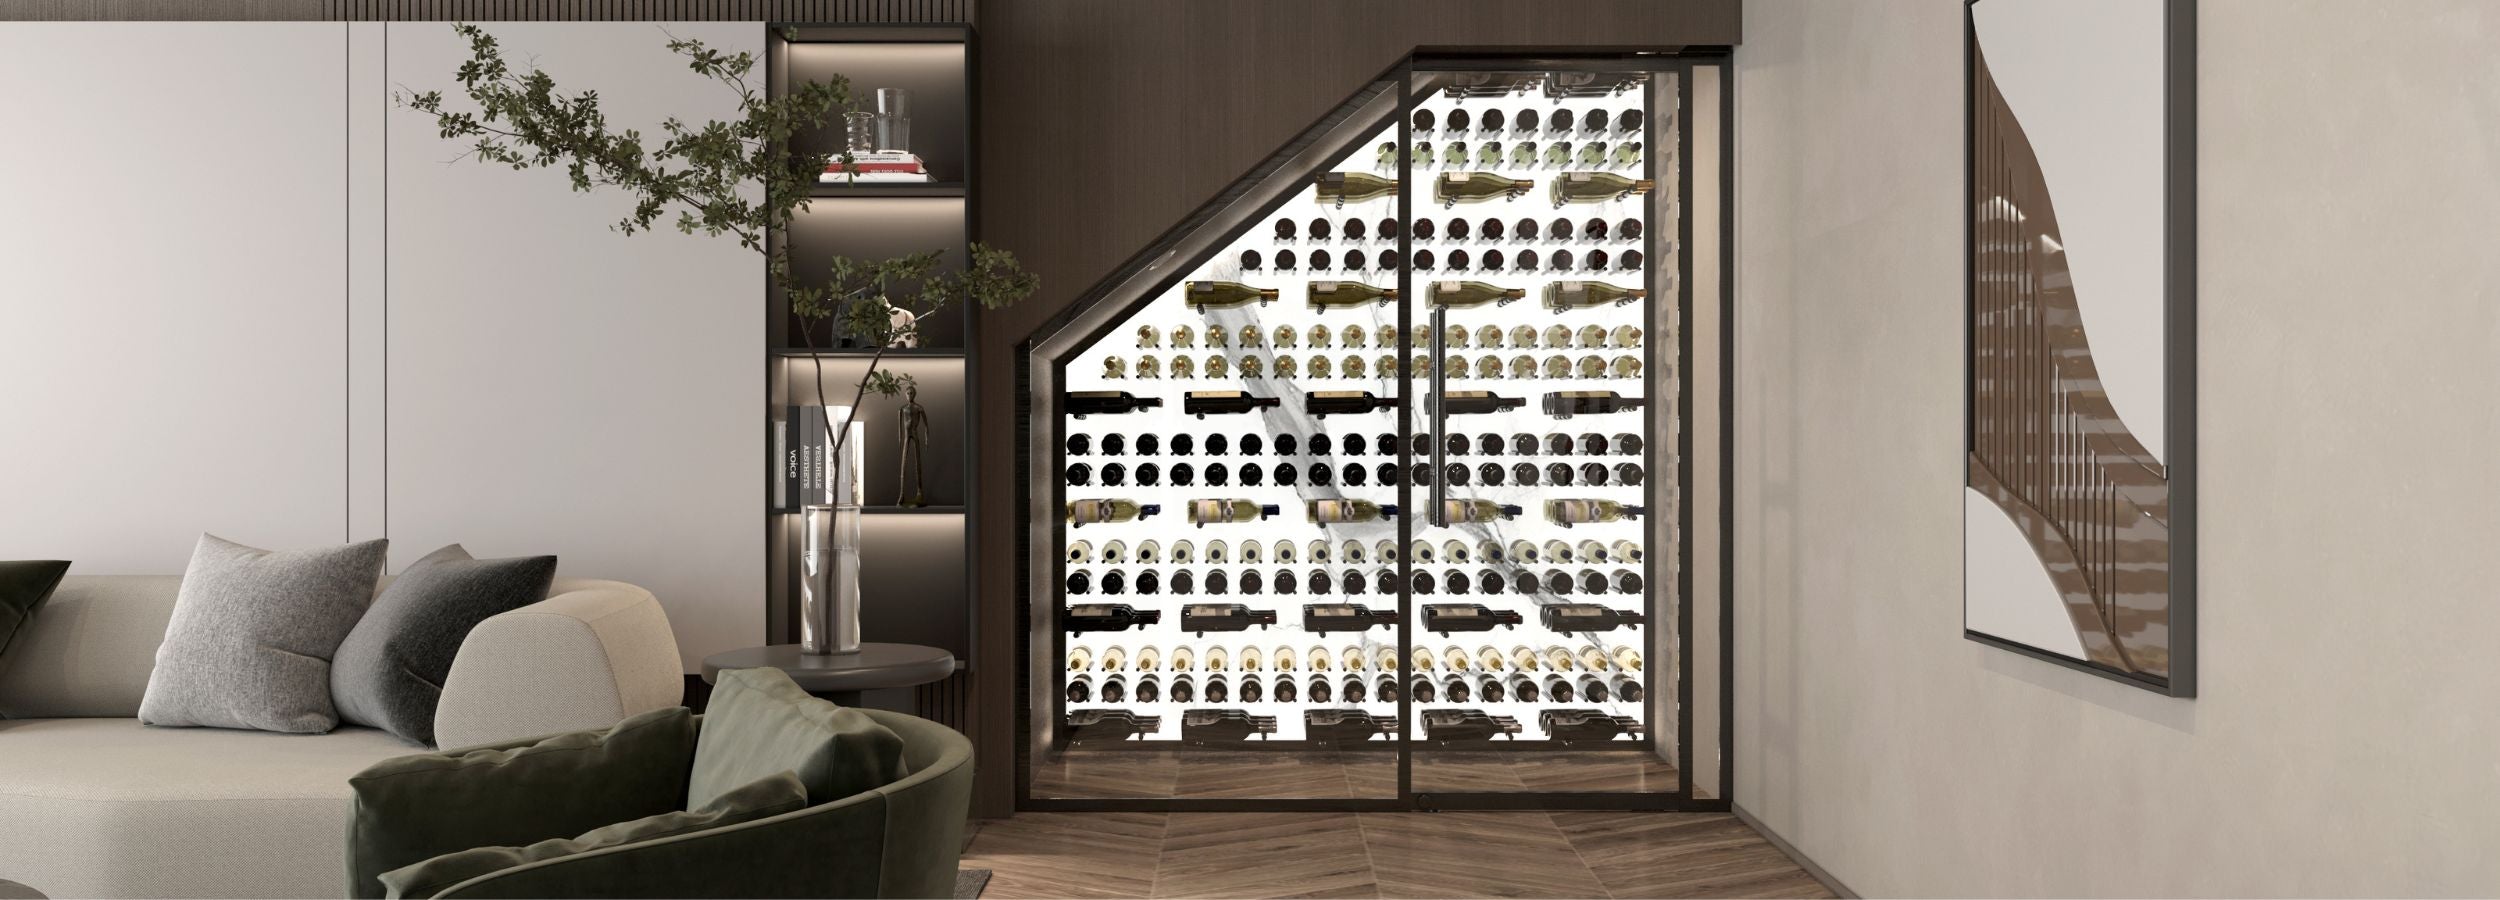 Modern wine storage design in closet - Genuwine Cellars Reserve